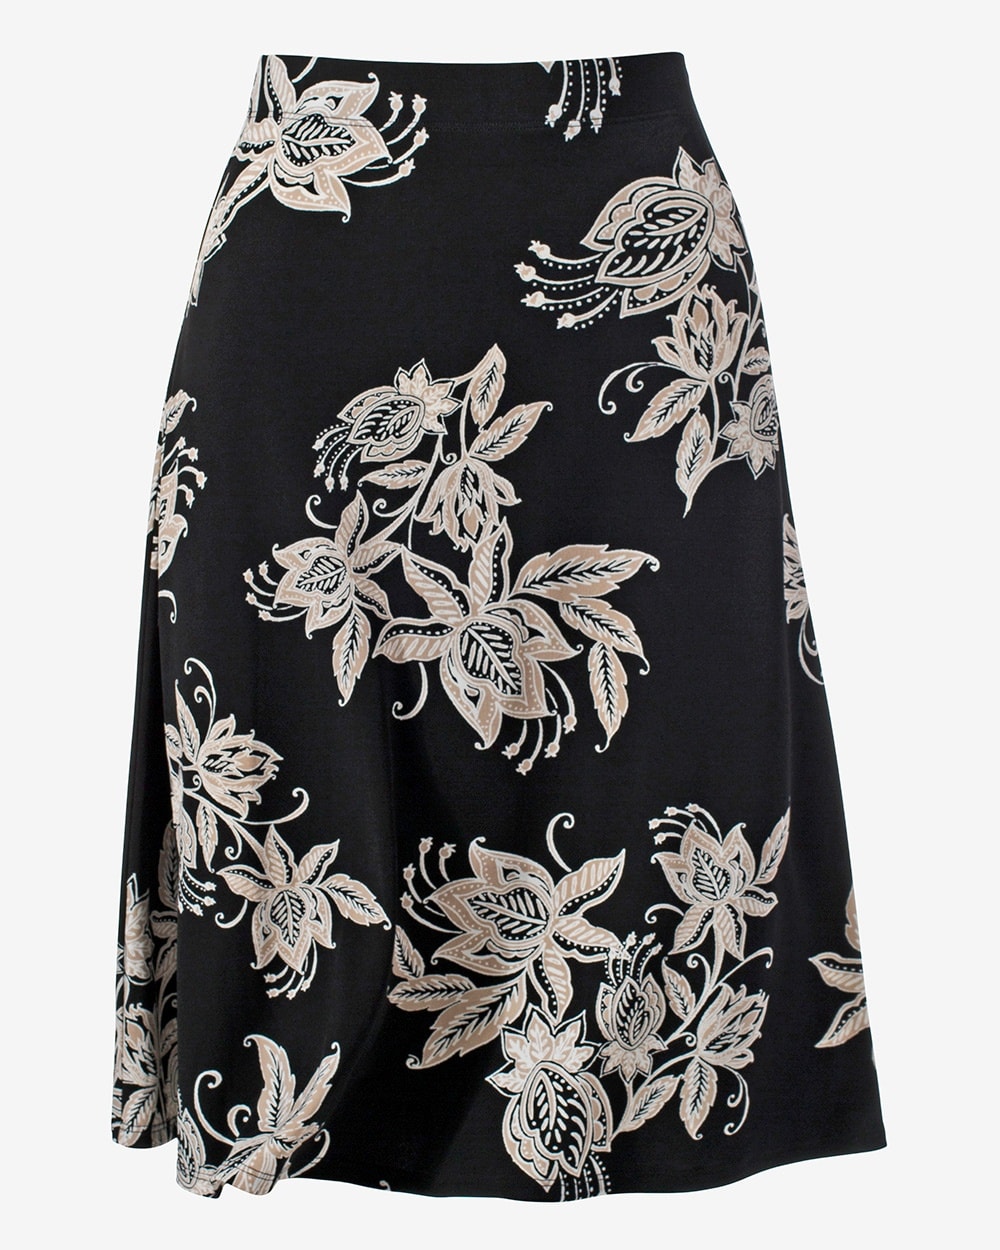 Deco Parisian Floral A-Line Skirt